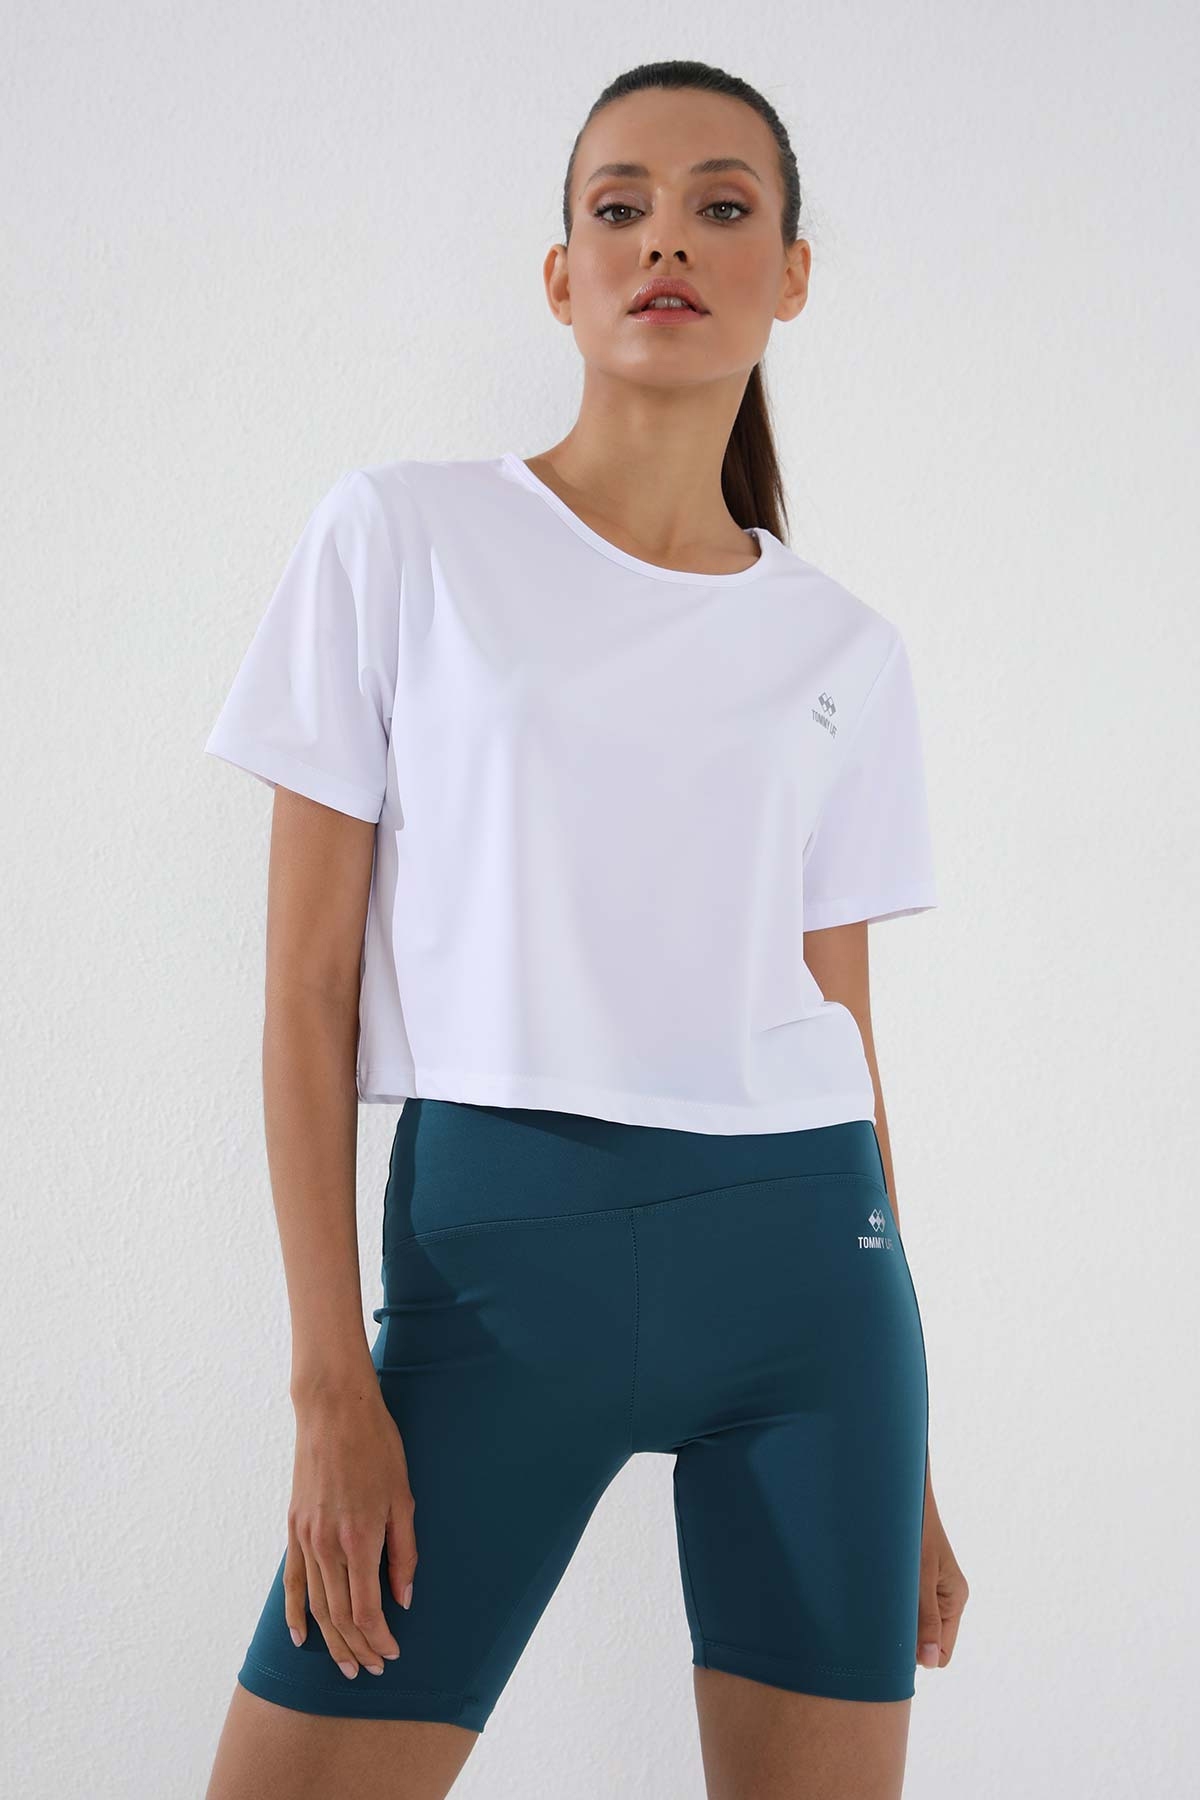 TommyLife - Beyaz Basic Kısa Kol Standart Kalıp O Yaka Kadın Crop Top T-Shirt - 97143